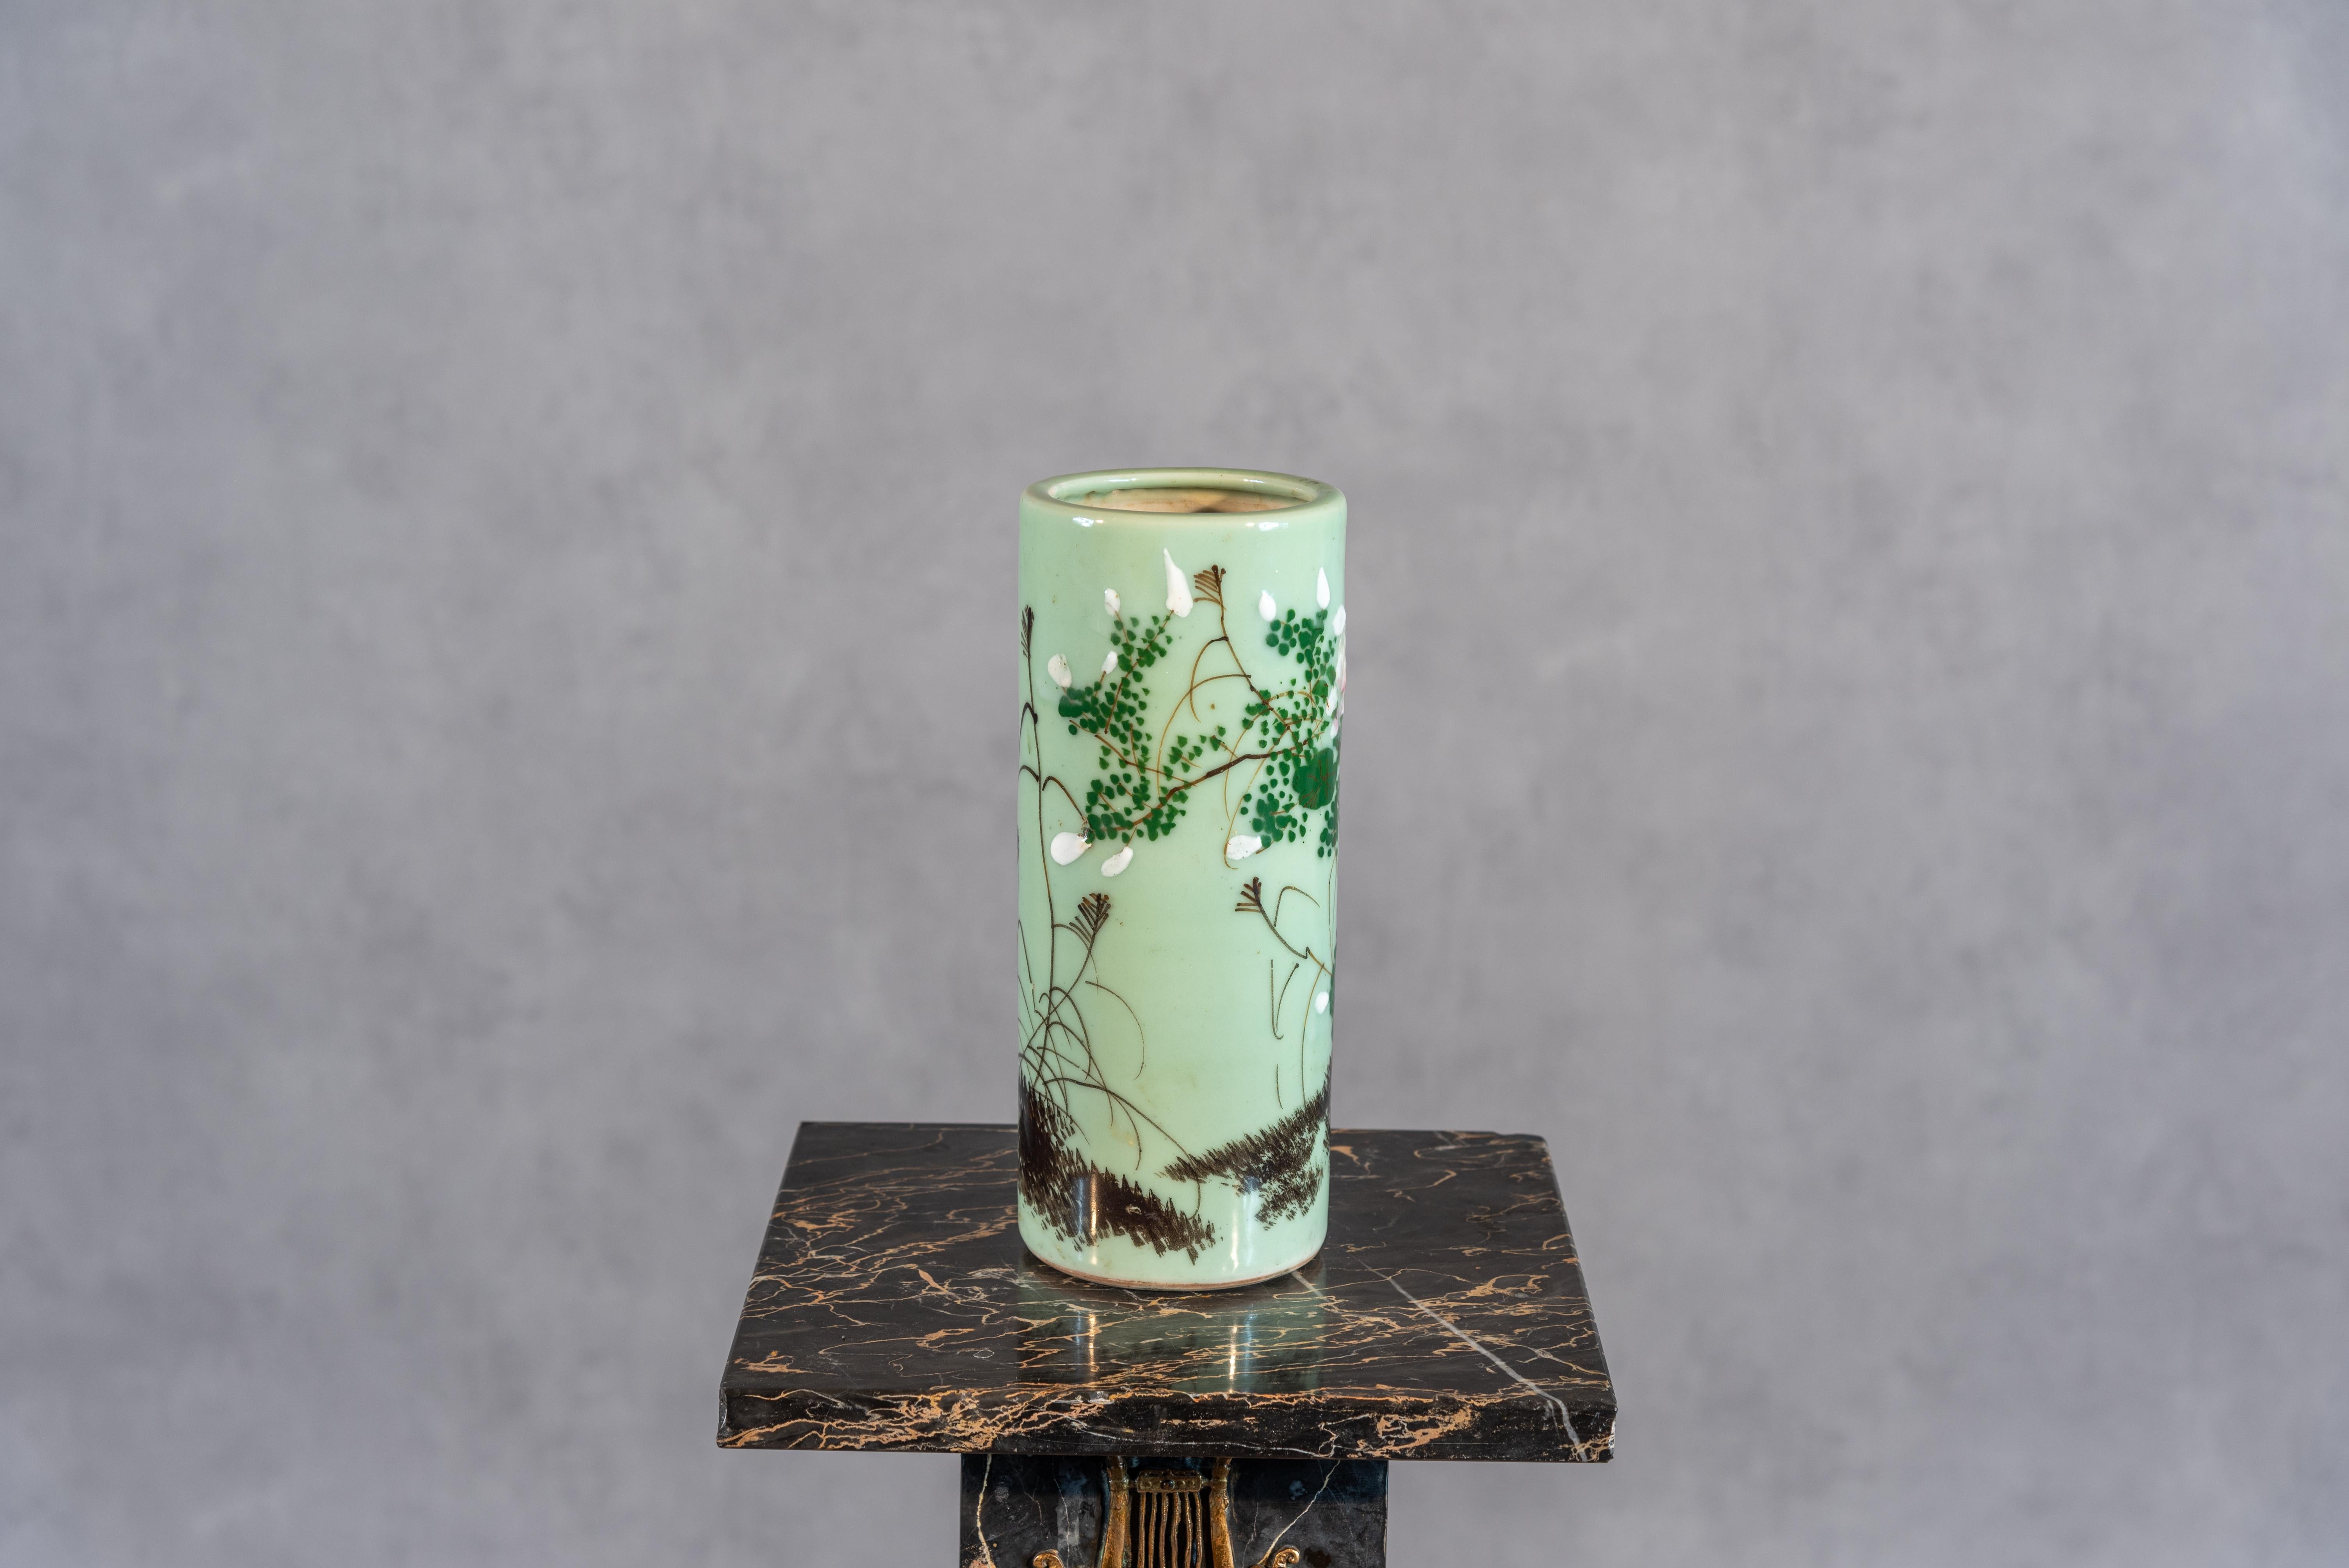 Diese große Celadon-Vase aus dem 20. Jahrhundert ist ein Beweis für die zeitlose Anziehungskraft der französischen Handwerkskunst. Die anmutig stehende Vase ist mit einem zarten Blumendekor verziert und zeigt die Verschmelzung von von der Natur